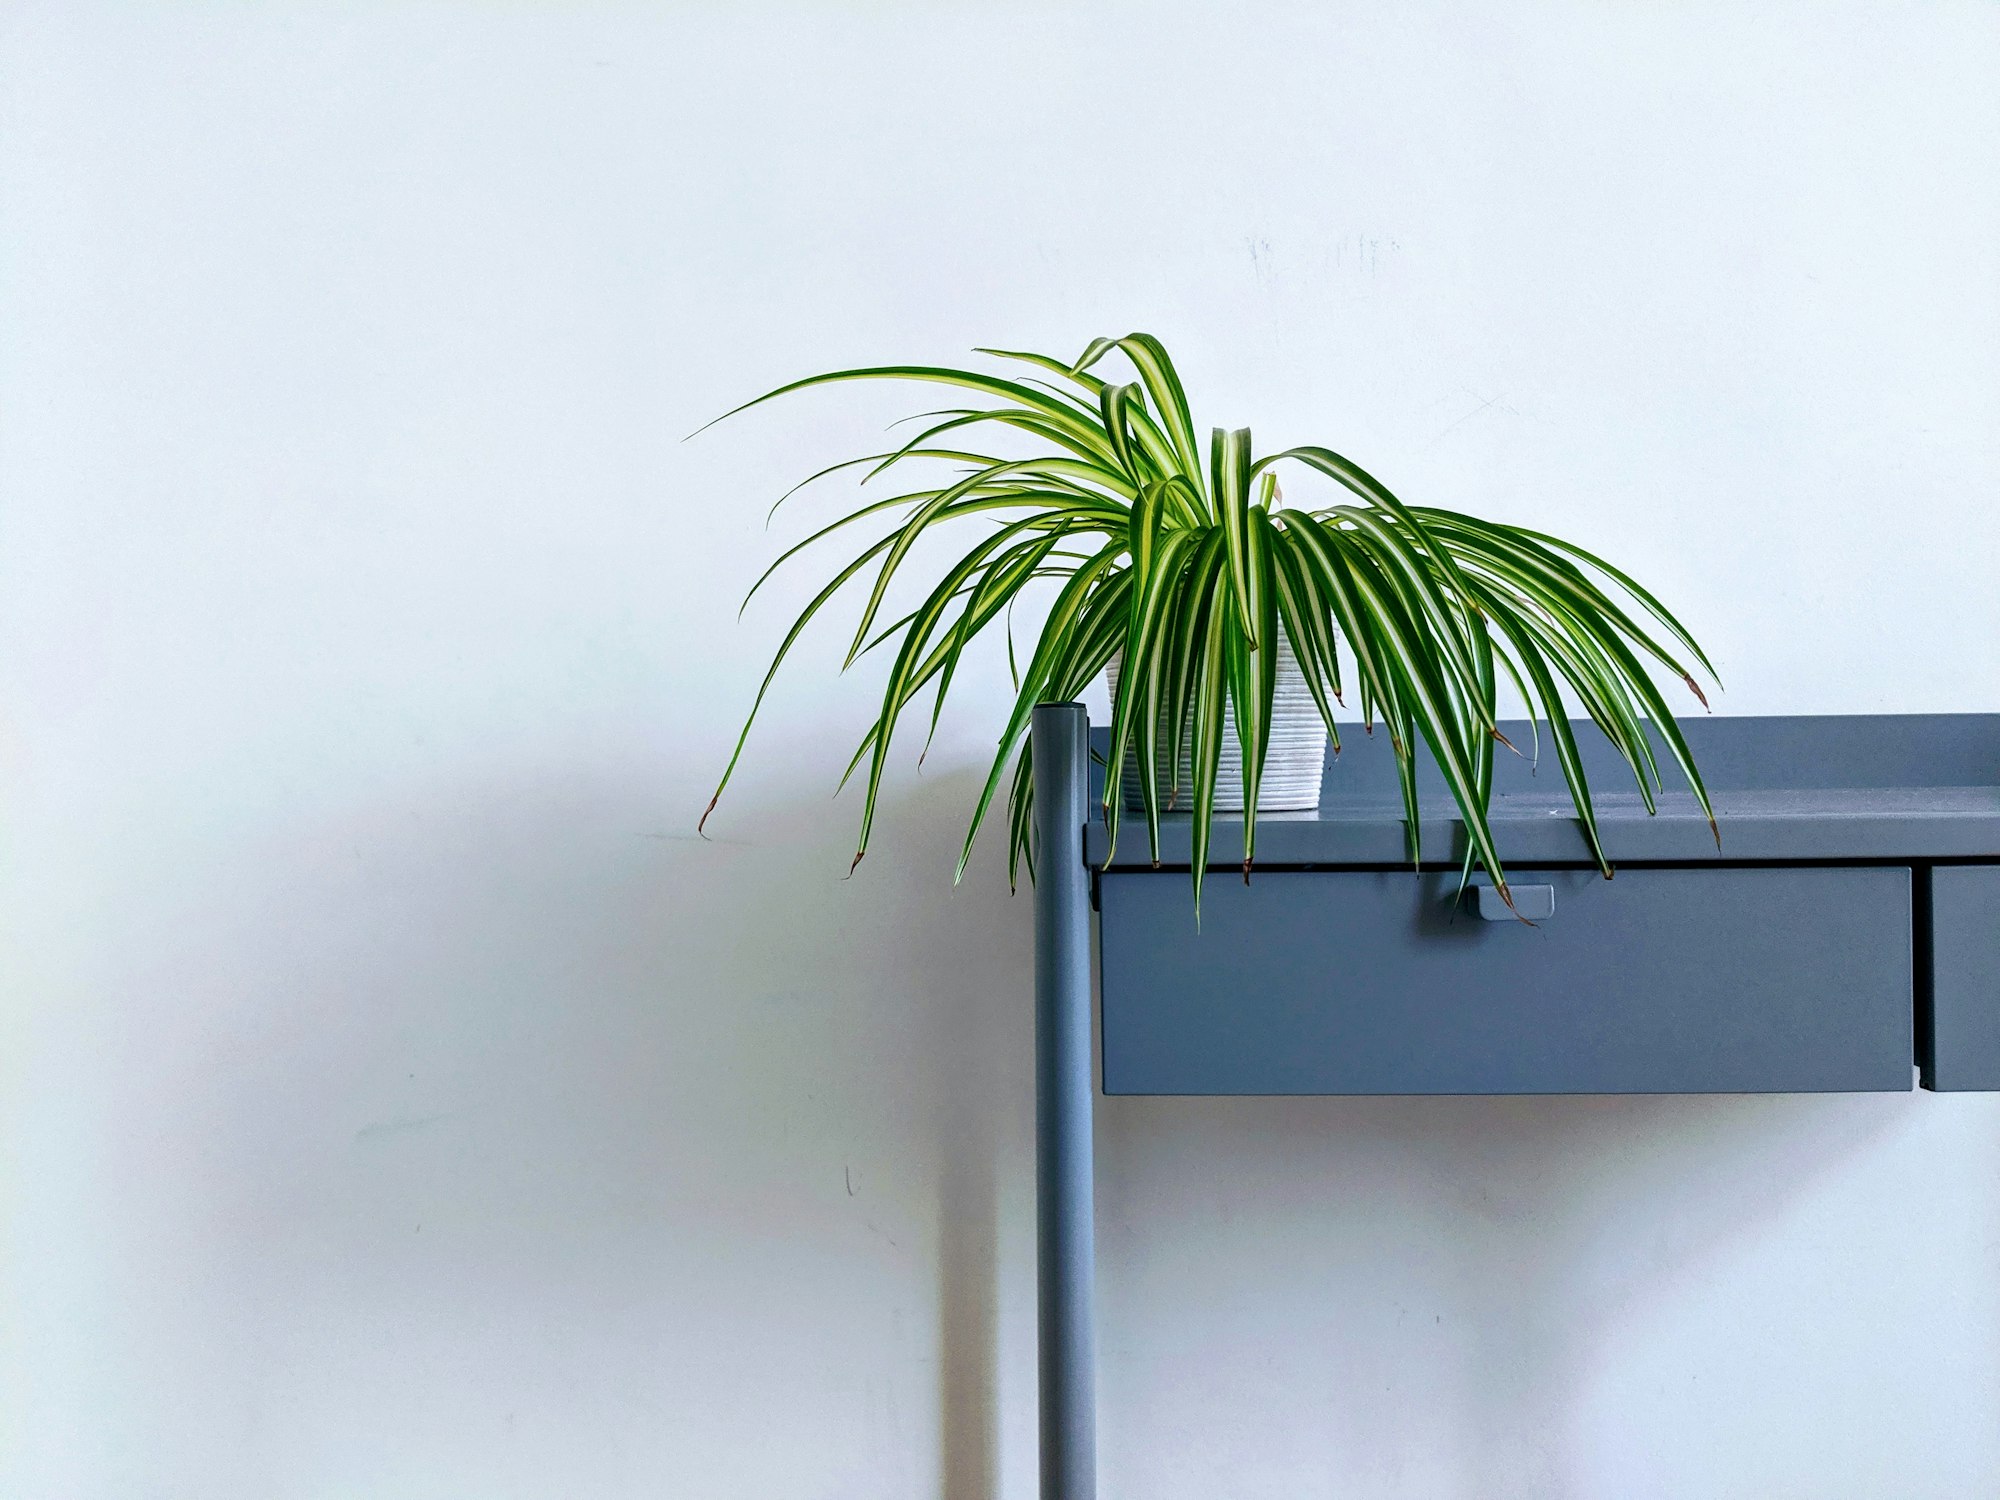 Plant on a shelf